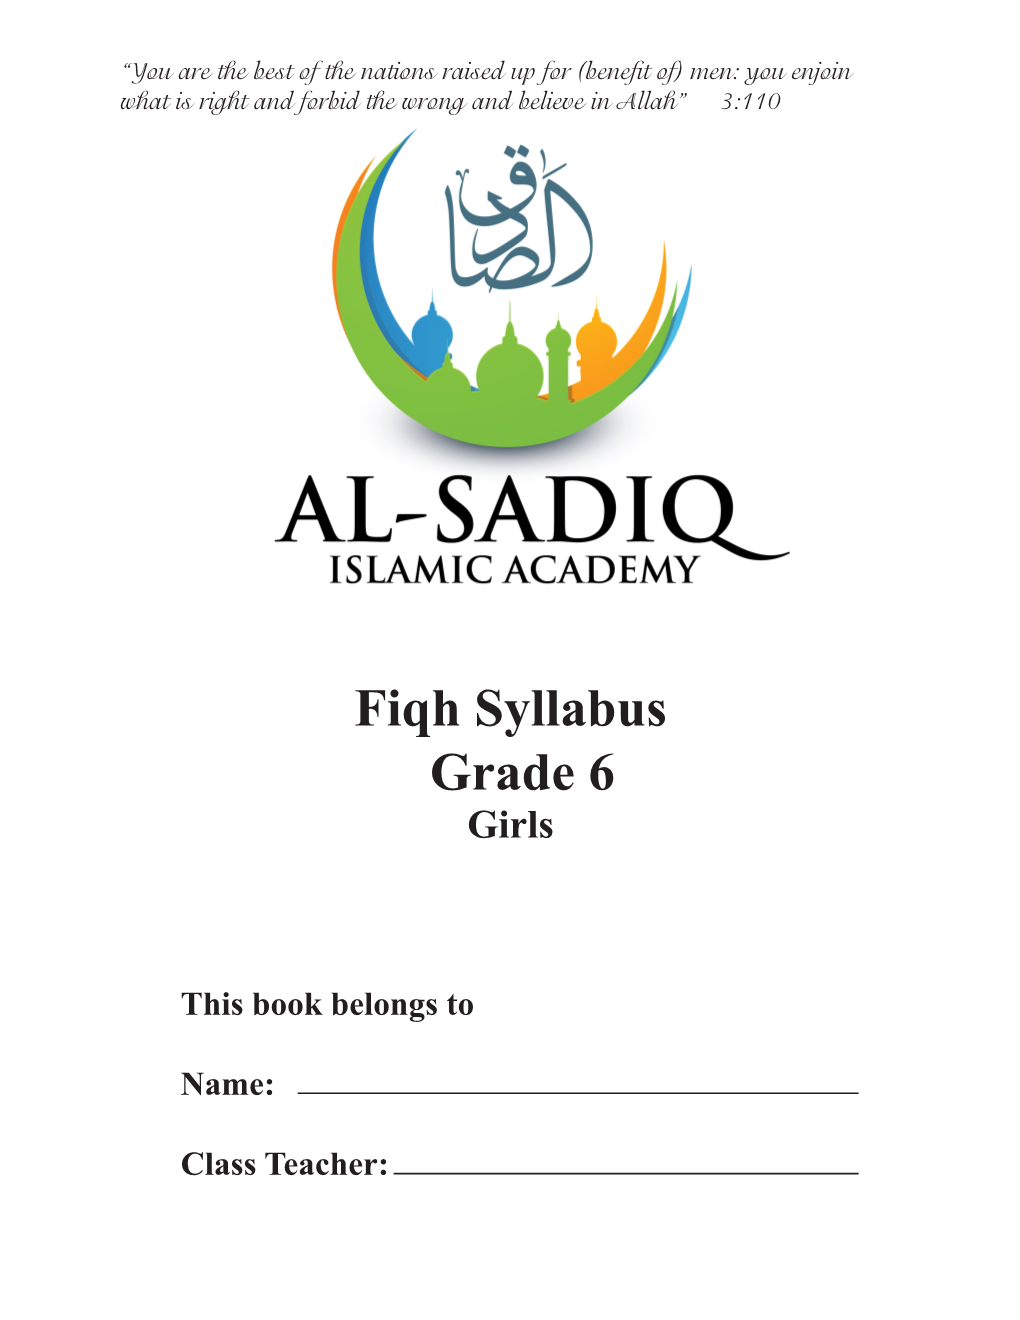 Fiqh Syllabus 6 Grade